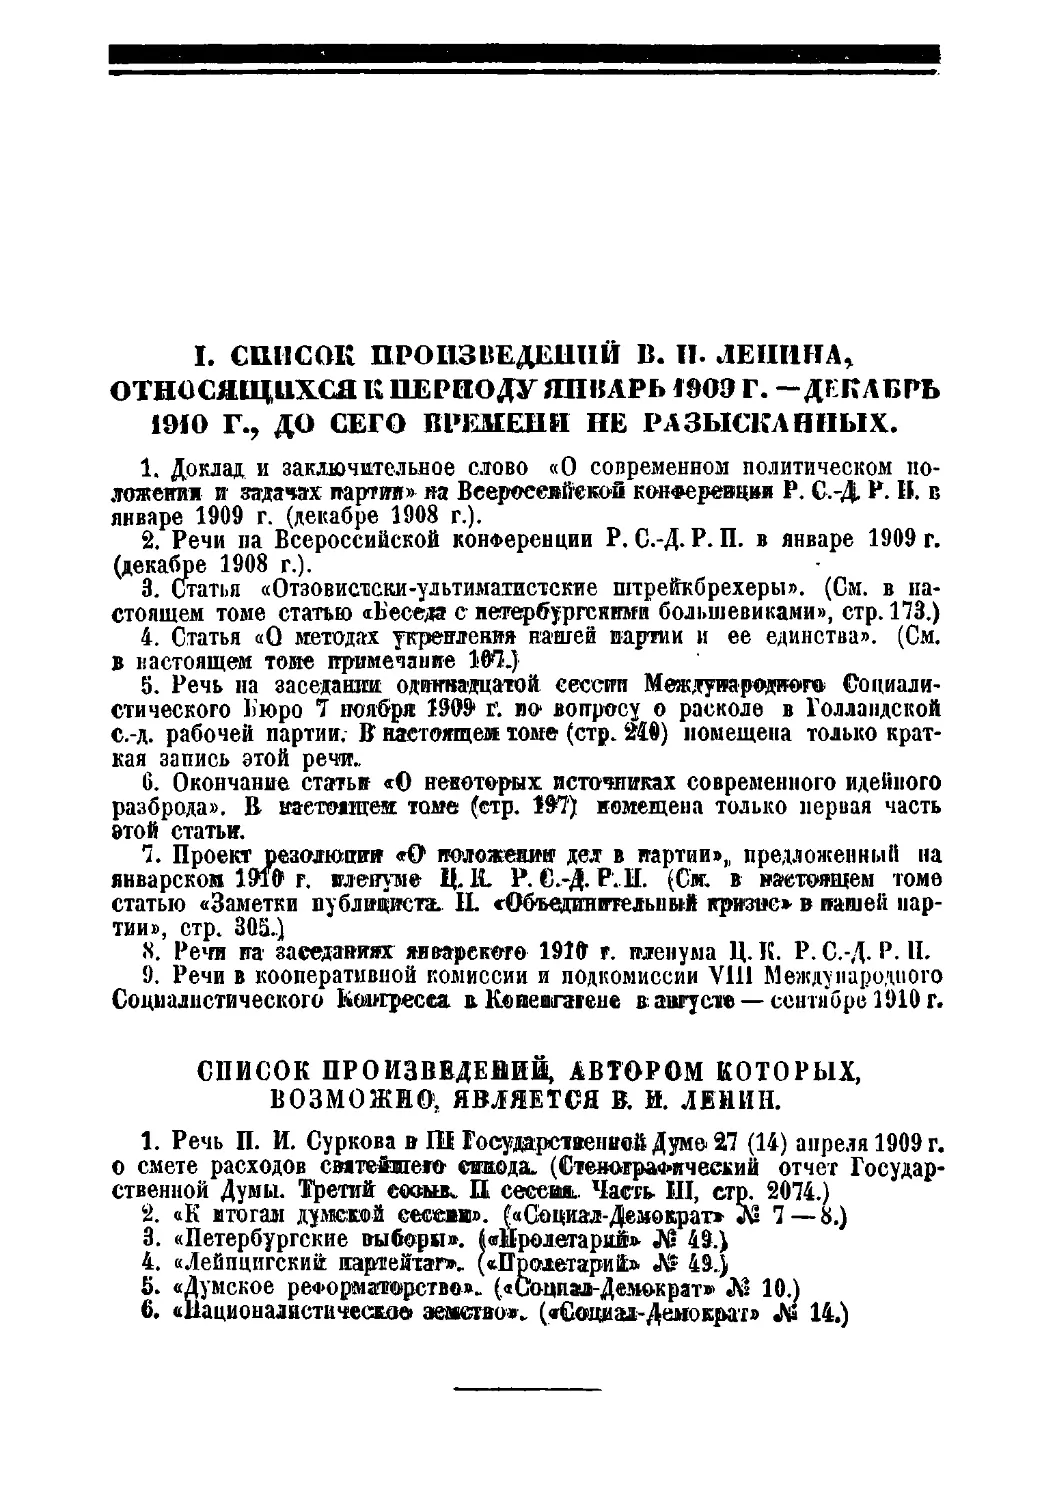 Список произведений, автором которых, возможно, является В. И. Ленин